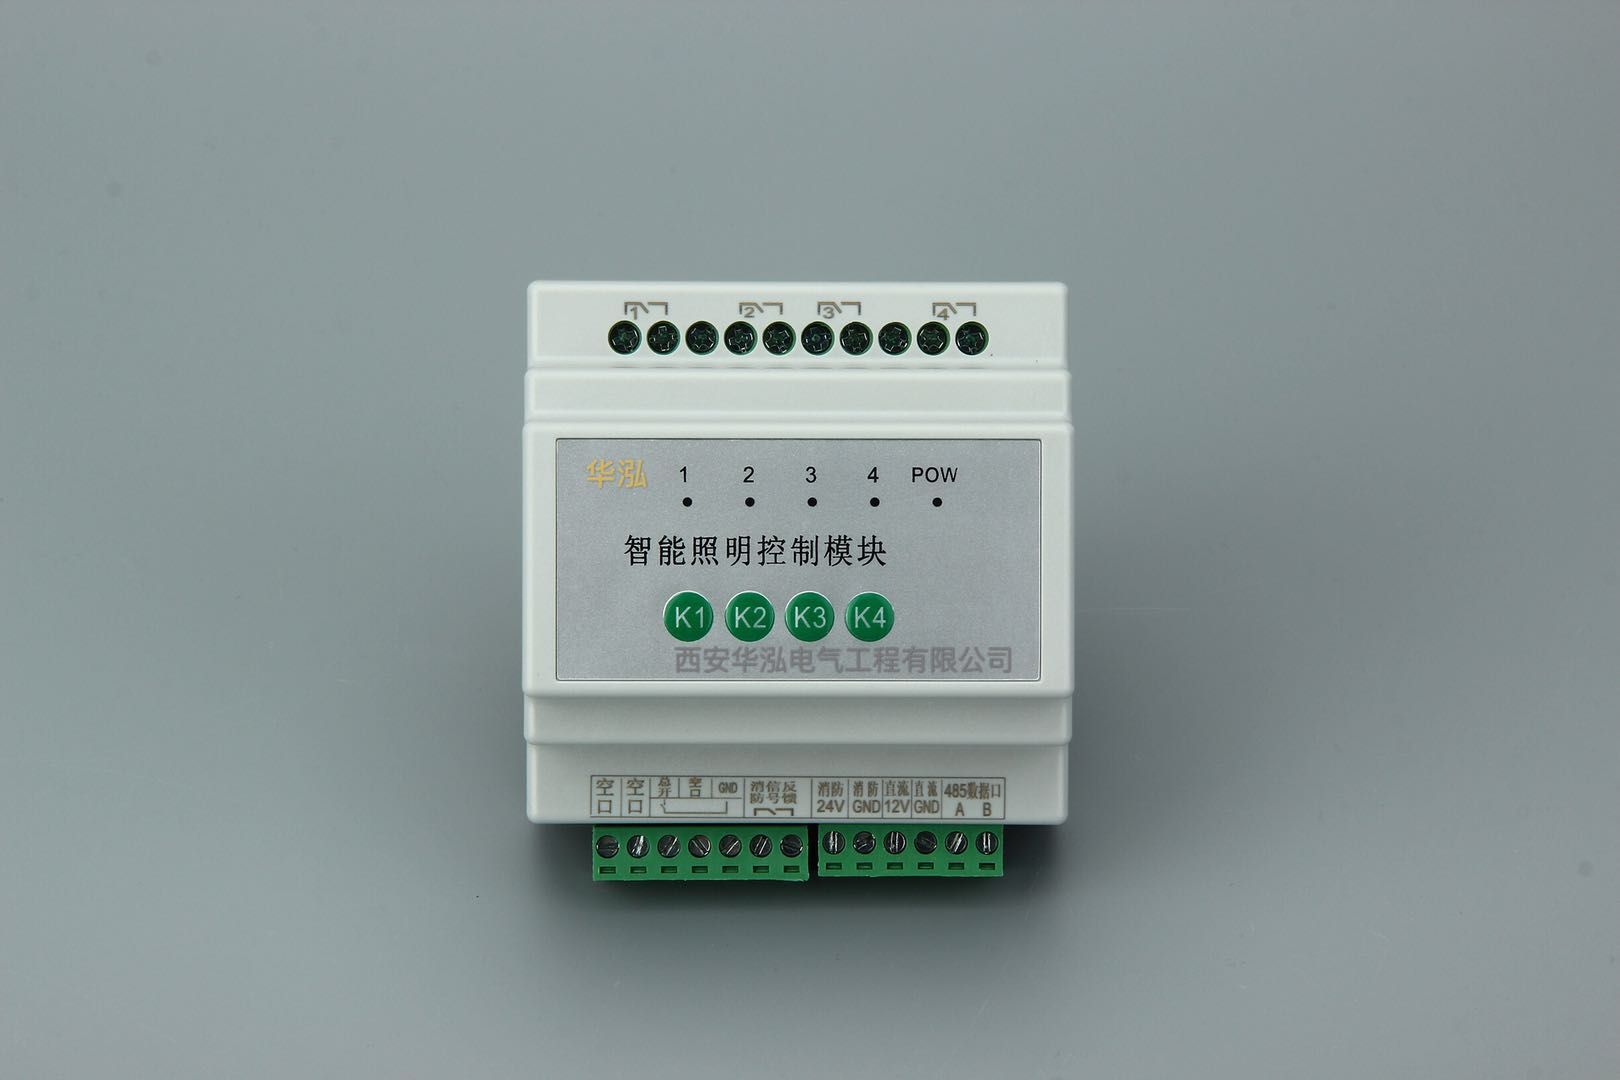 【TSSD-1016C】智能照明模块系统